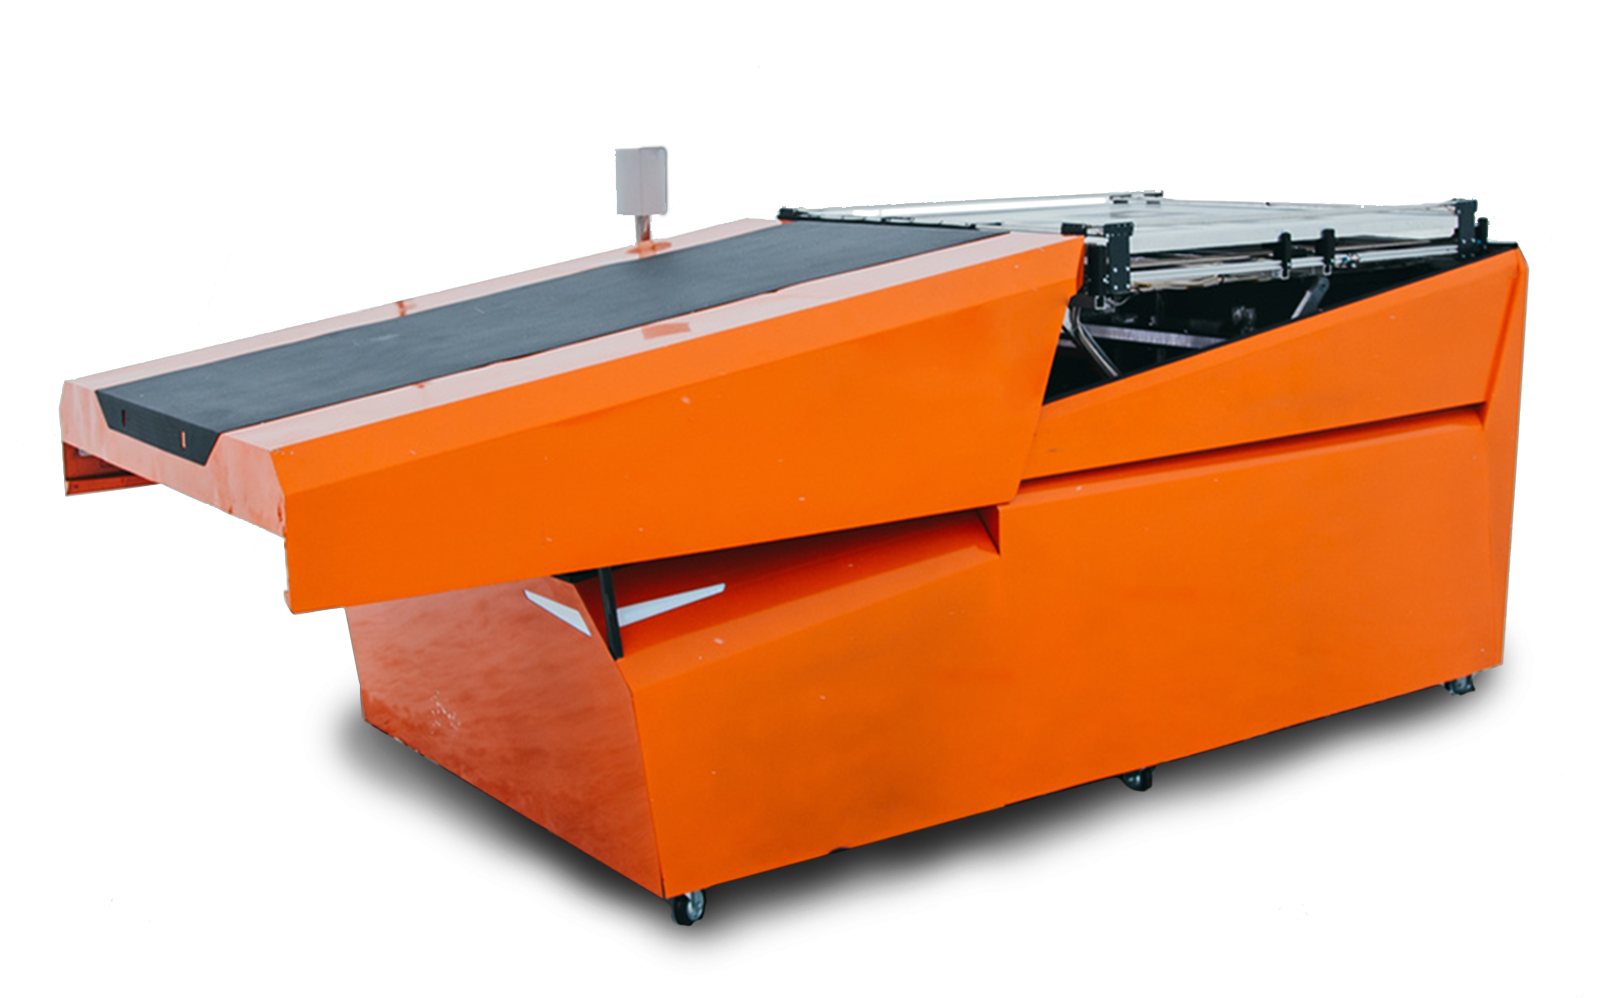 общий вид корпуса автономной станции drone docking цвет оранжевый